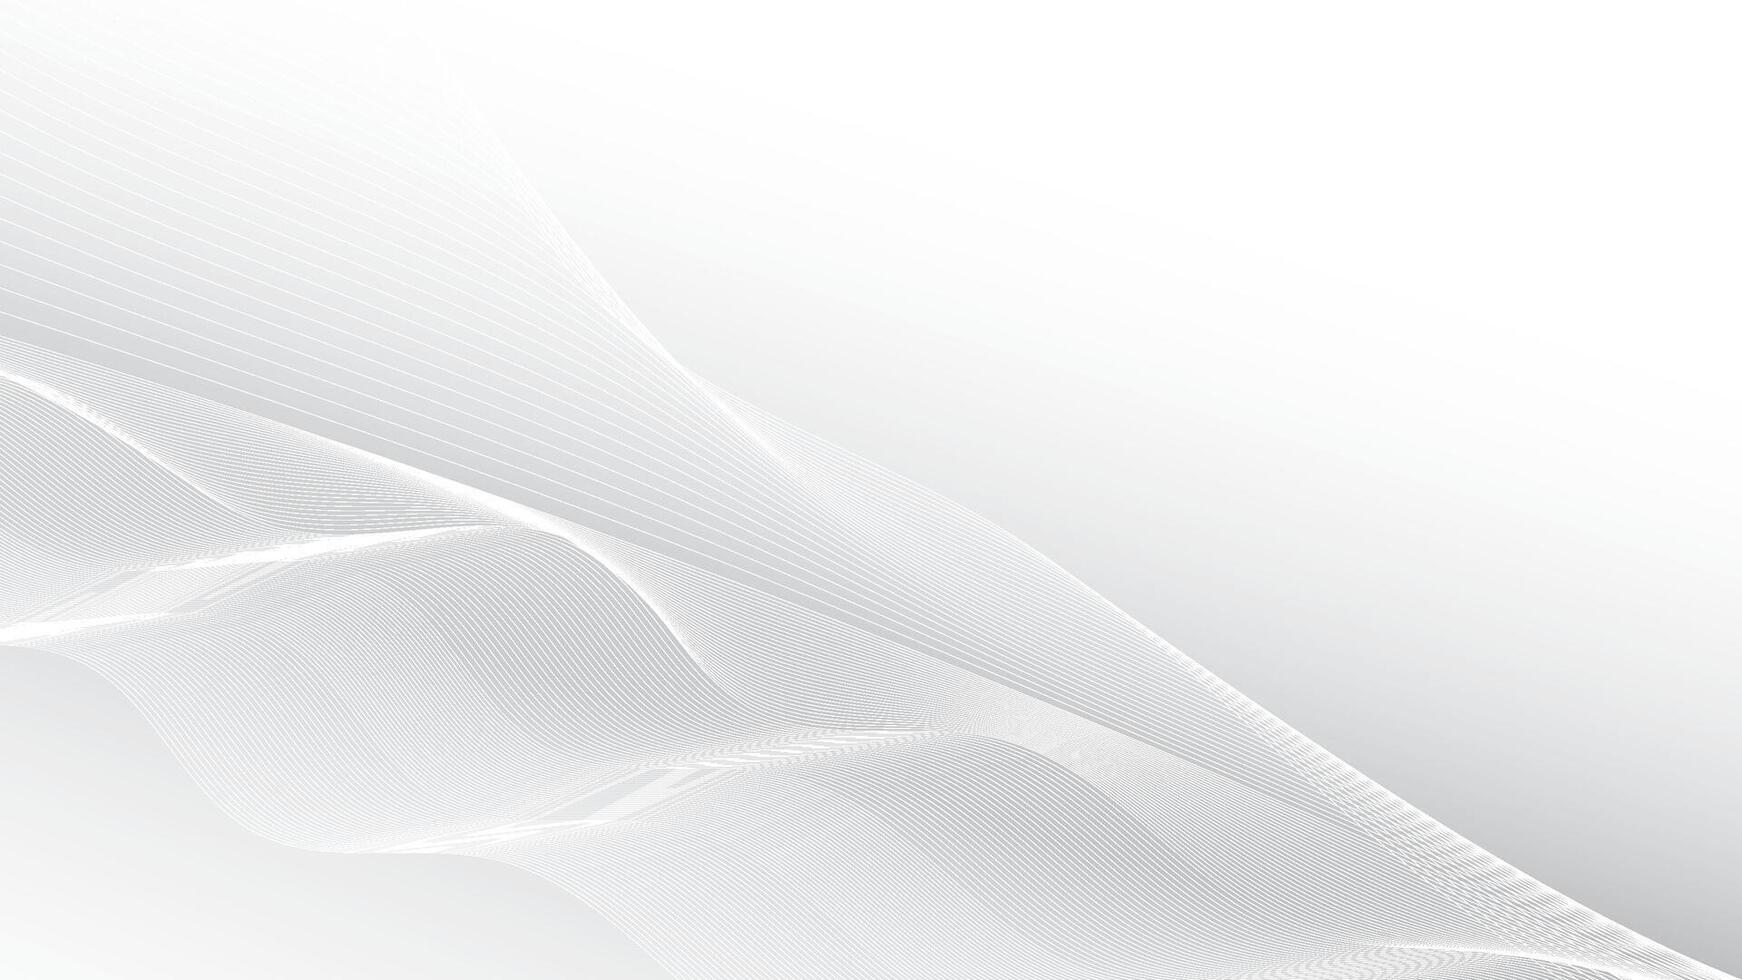 abstrakt vit och grå Färg, modern design Ränder bakgrund med vågig mönster. vektor illustration.